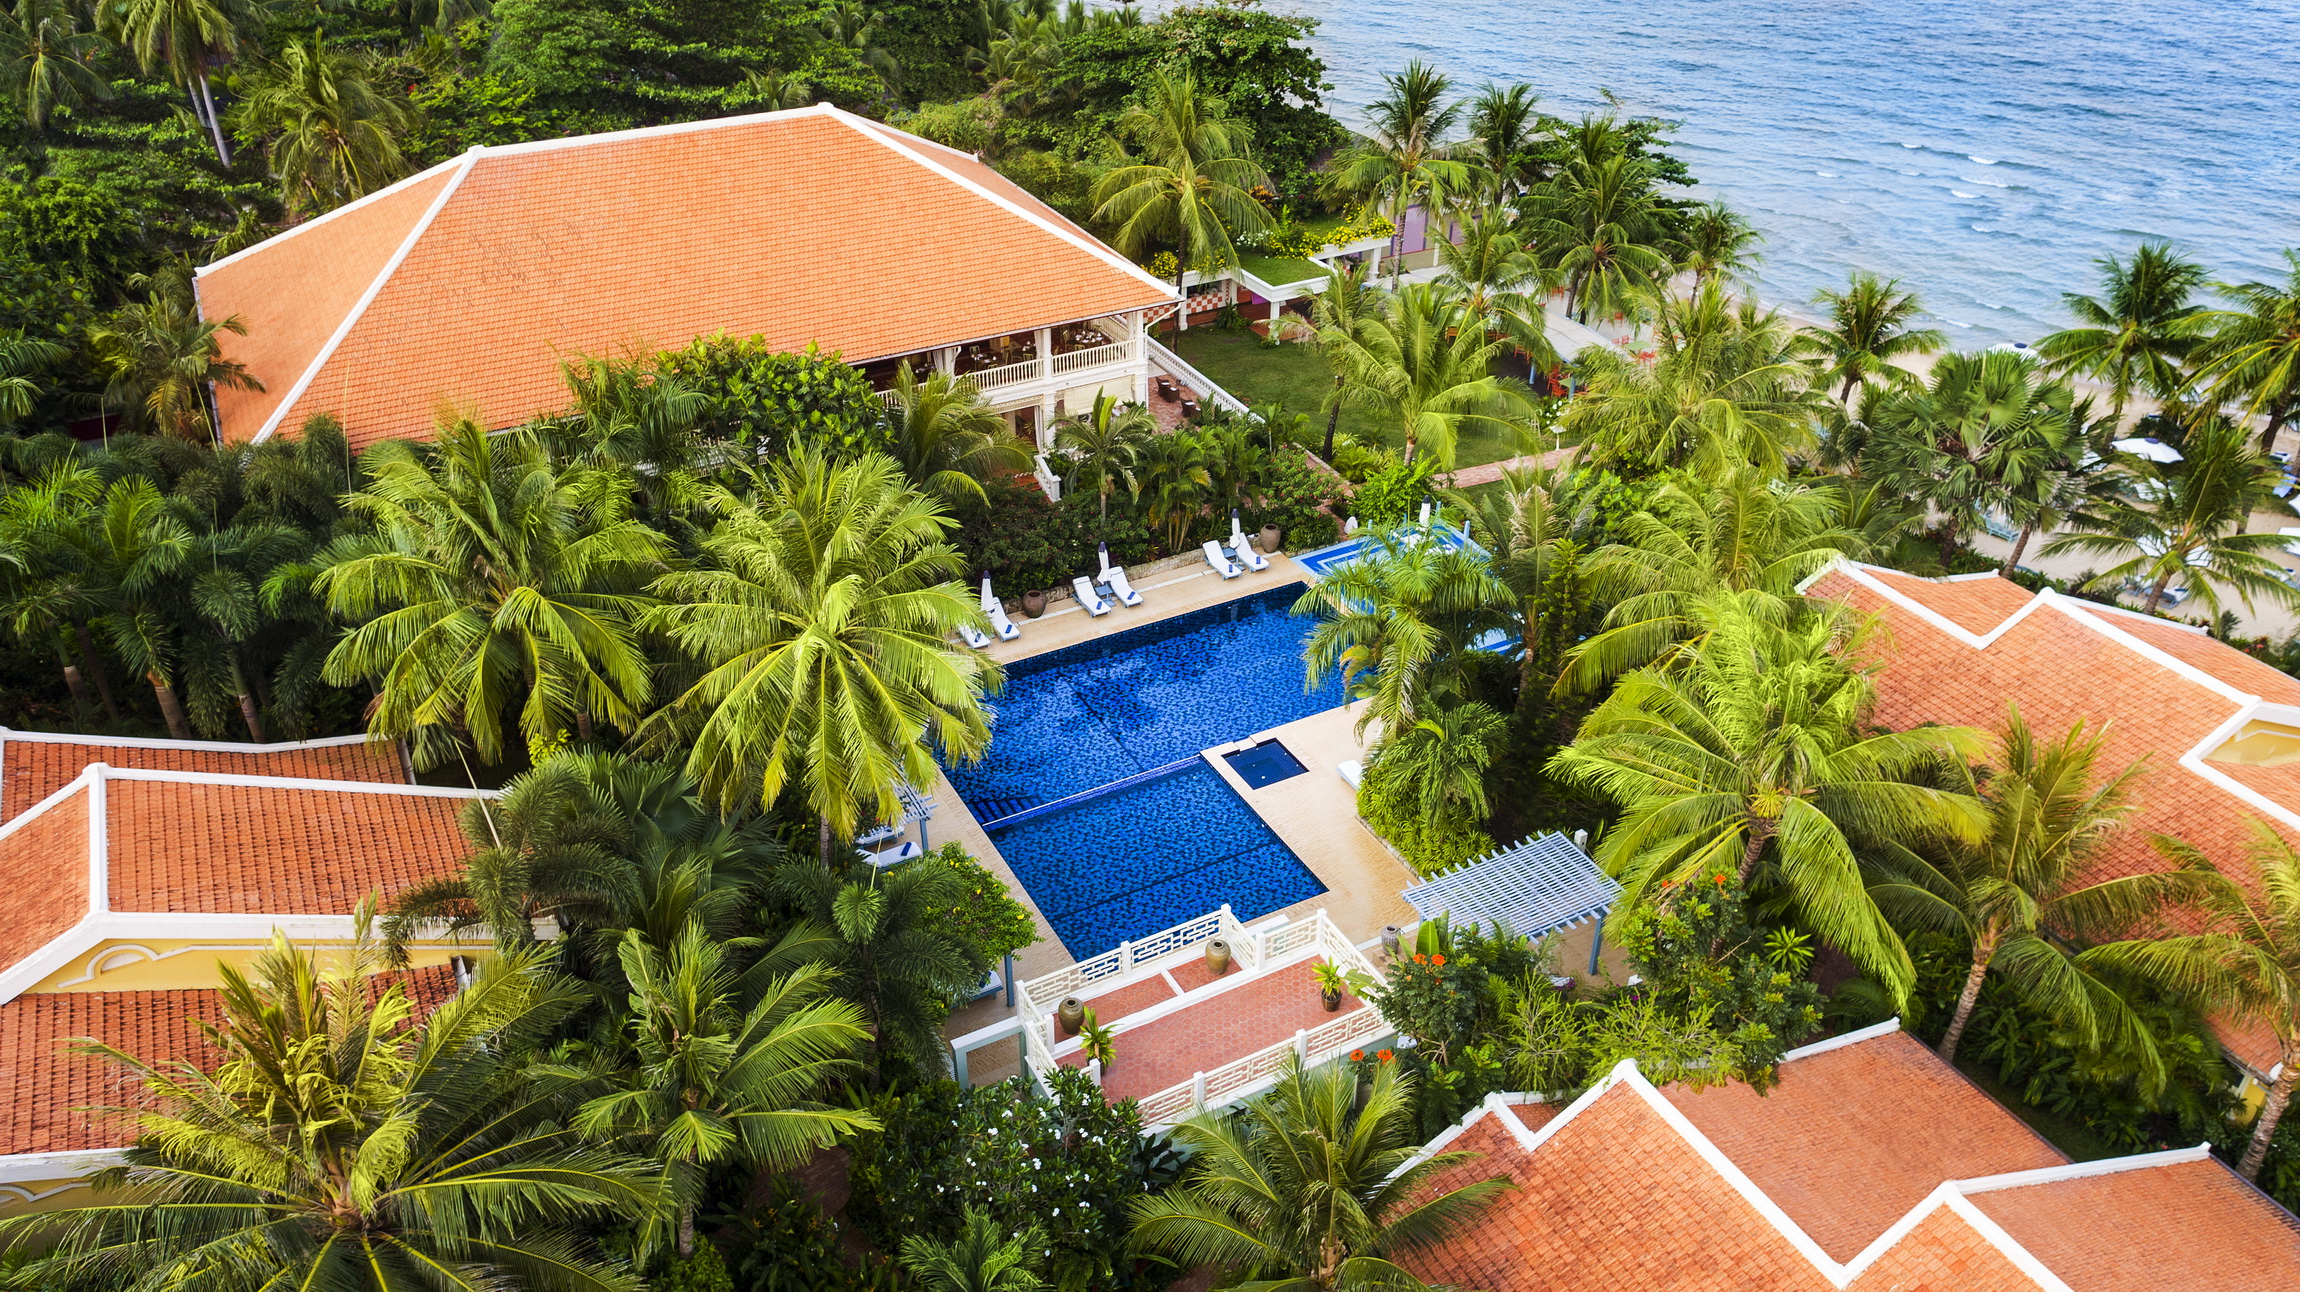 Loạt resort Việt Nam được vinh danh bởi chất lượng và dịch vụ xuất sắc - 1